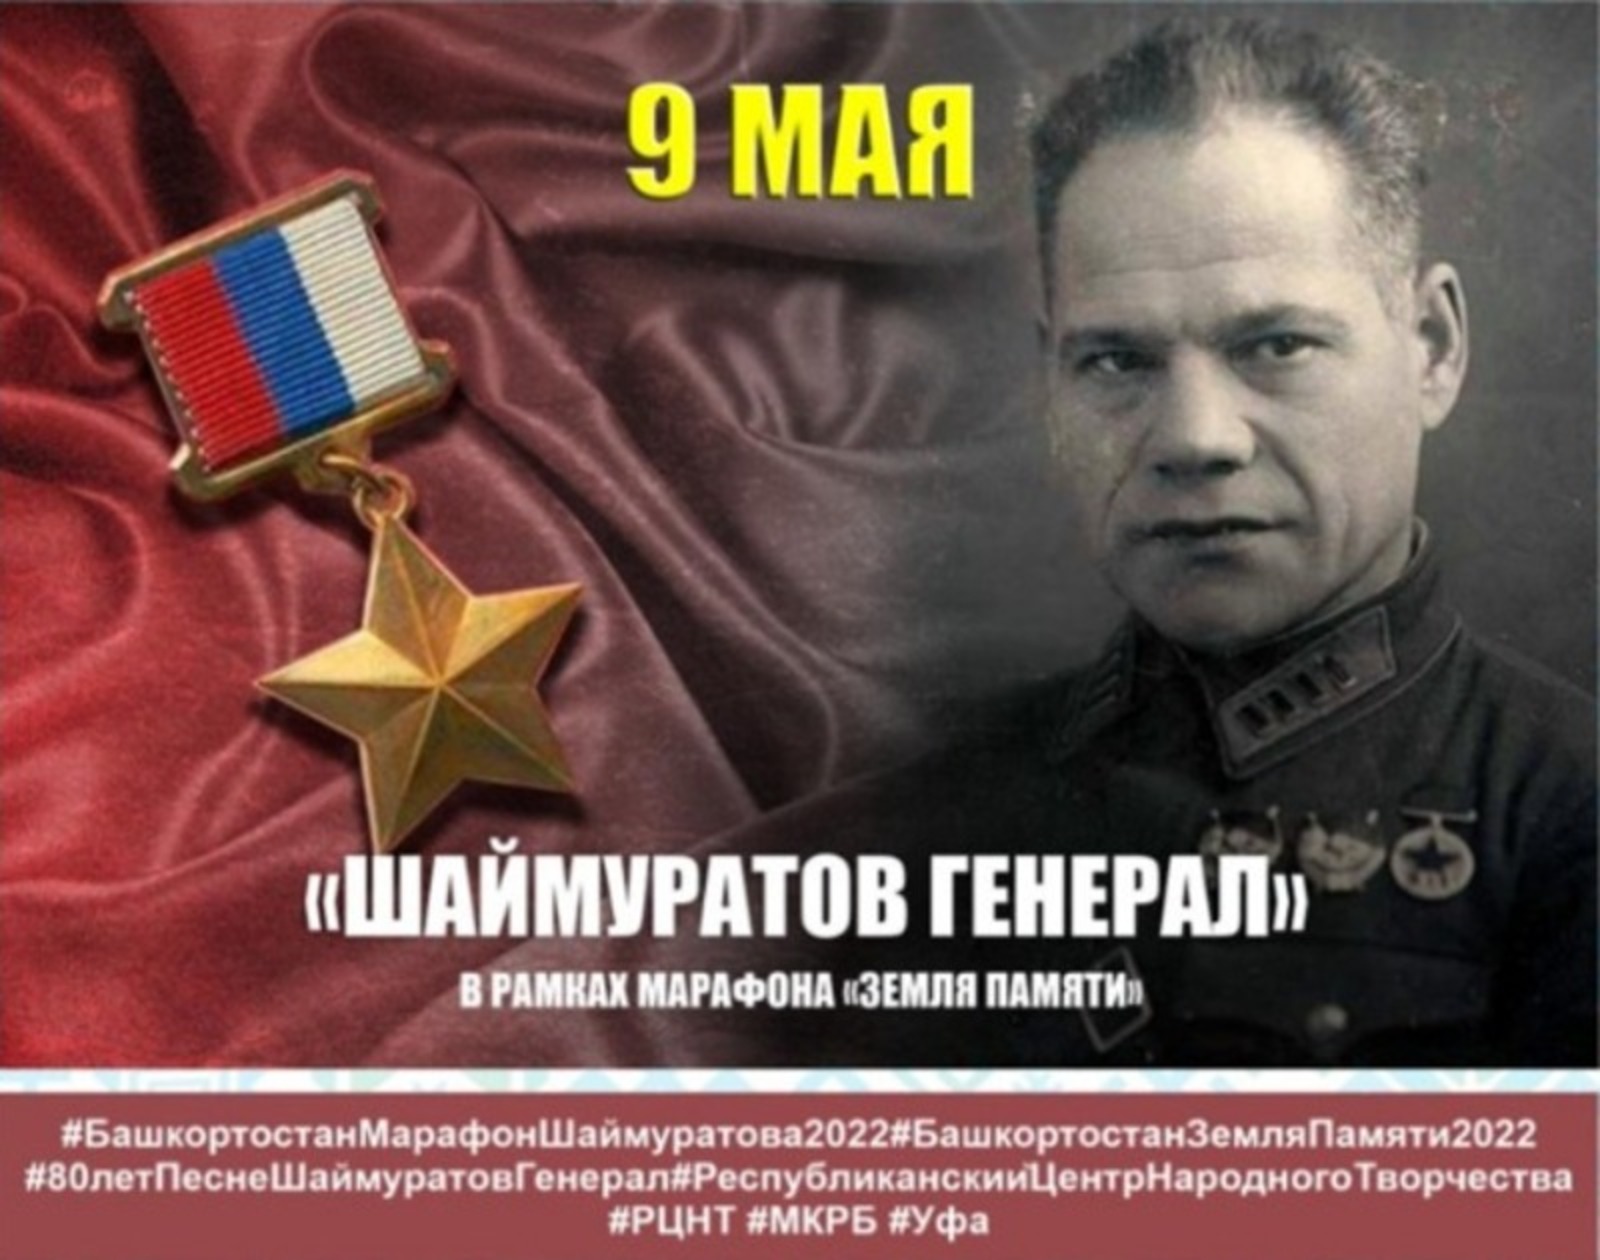 Песню «Шаймуратов генерал» исполнят тысячи жителей Башкирии